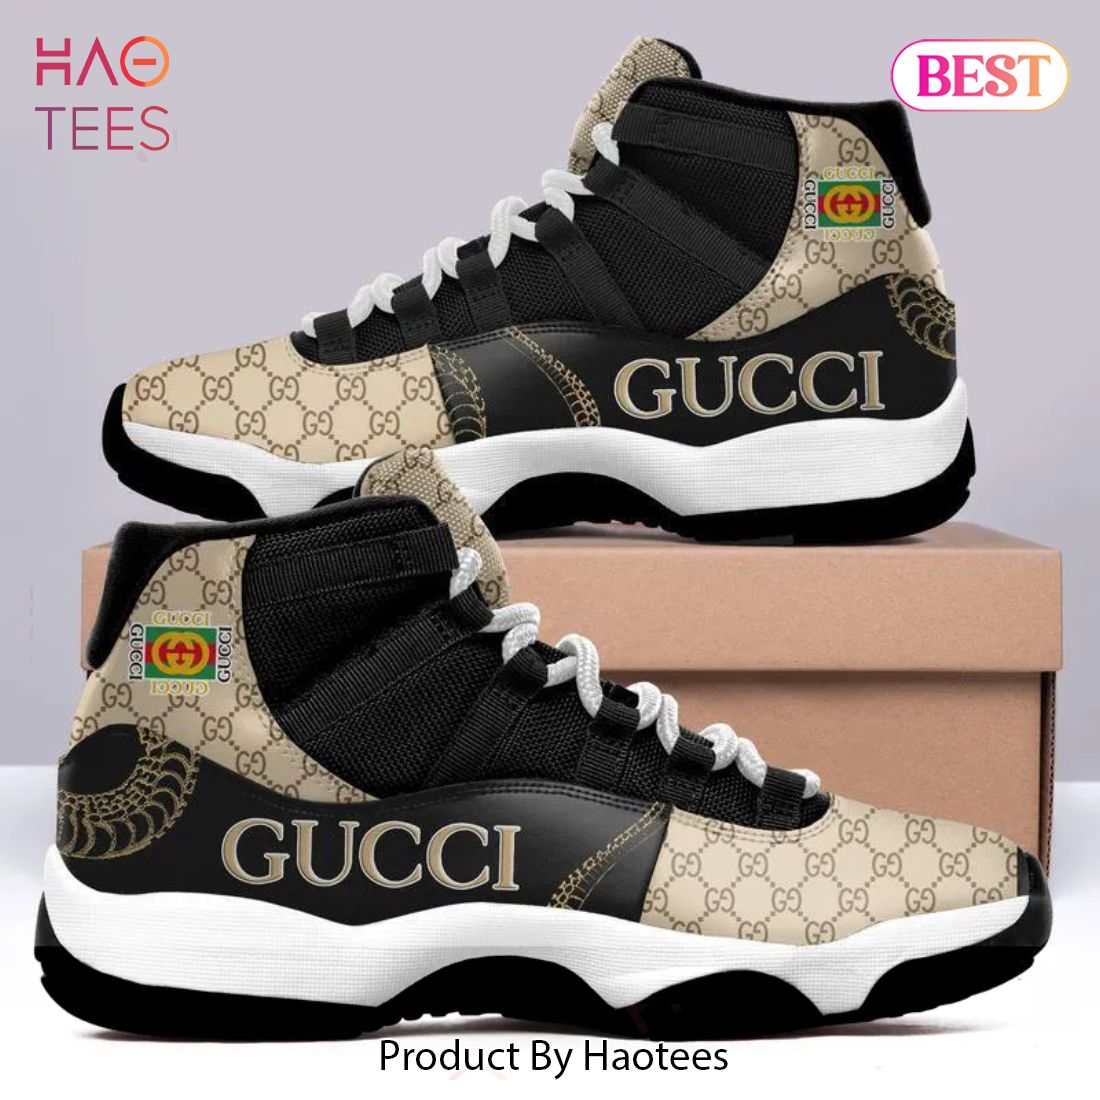 [NEW FASHION] Gucci Logo Air Jordan 11 Sneakers Shoes Hot 2023 Gifts For Men Women